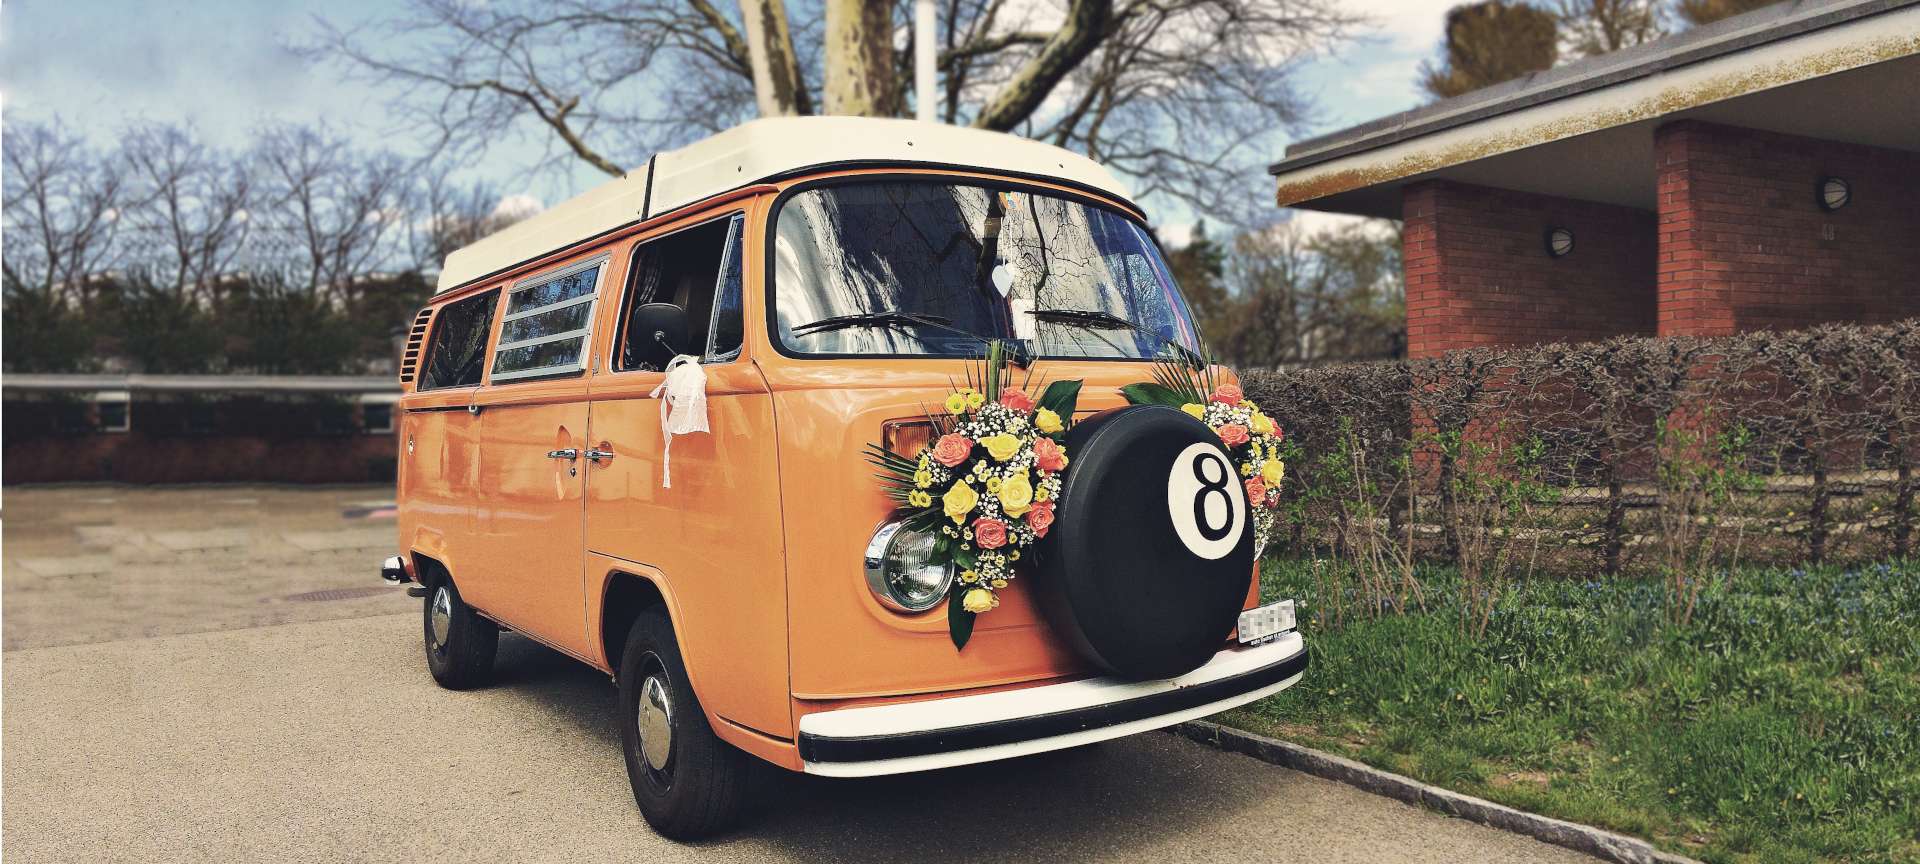 Décoration florale sur voiture de collection bus VW loué comme voiture de mariage